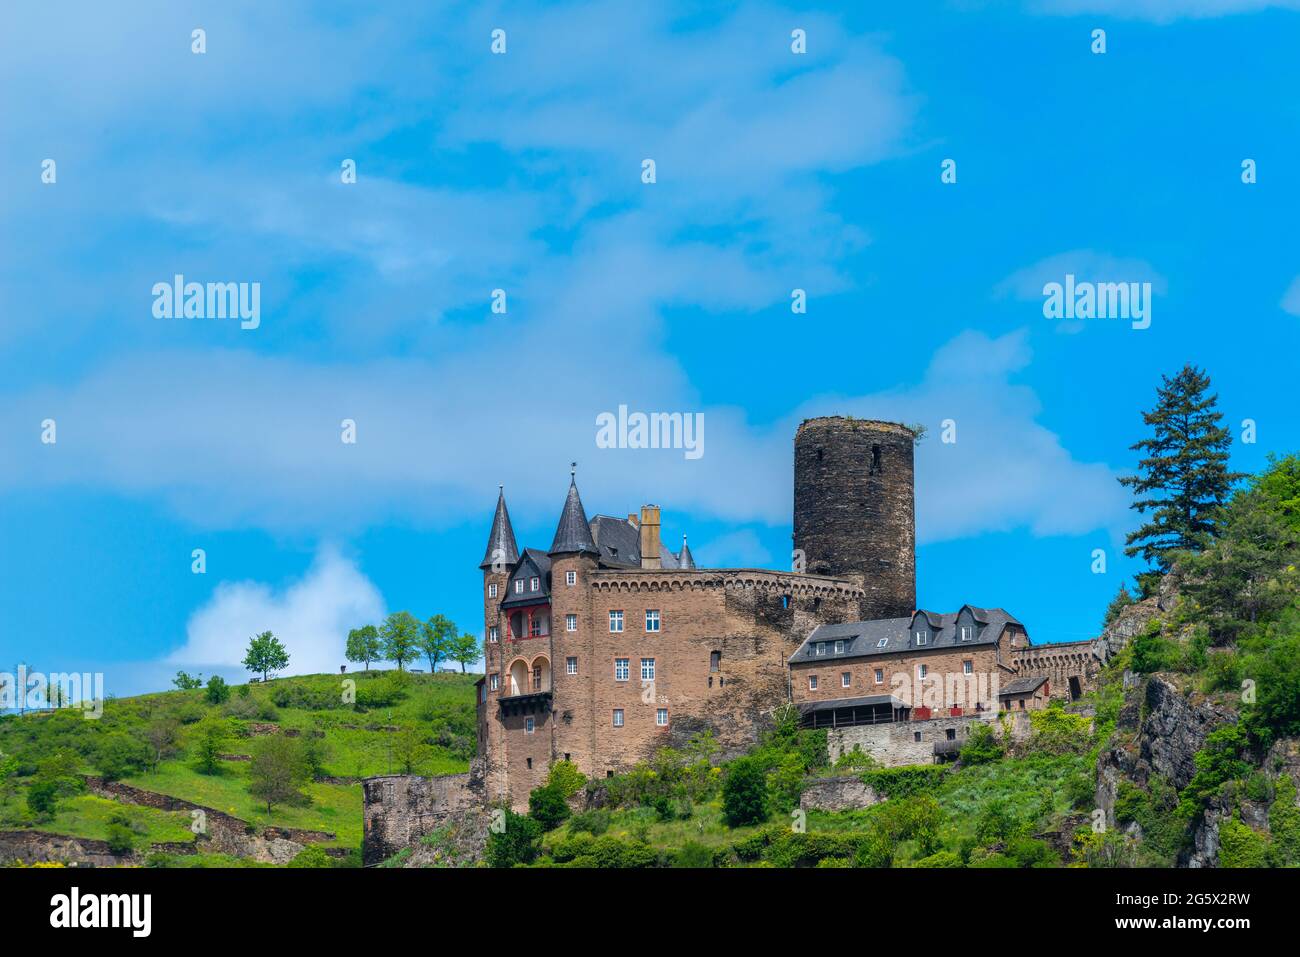 Schloss Katz aus dem 14. Jahrhundert, St. Goarshausen, Oberes Mittelrheintal, UNESCO-Weltkulturerbe, Rheinland-Pfalz, Deutschland Stockfoto